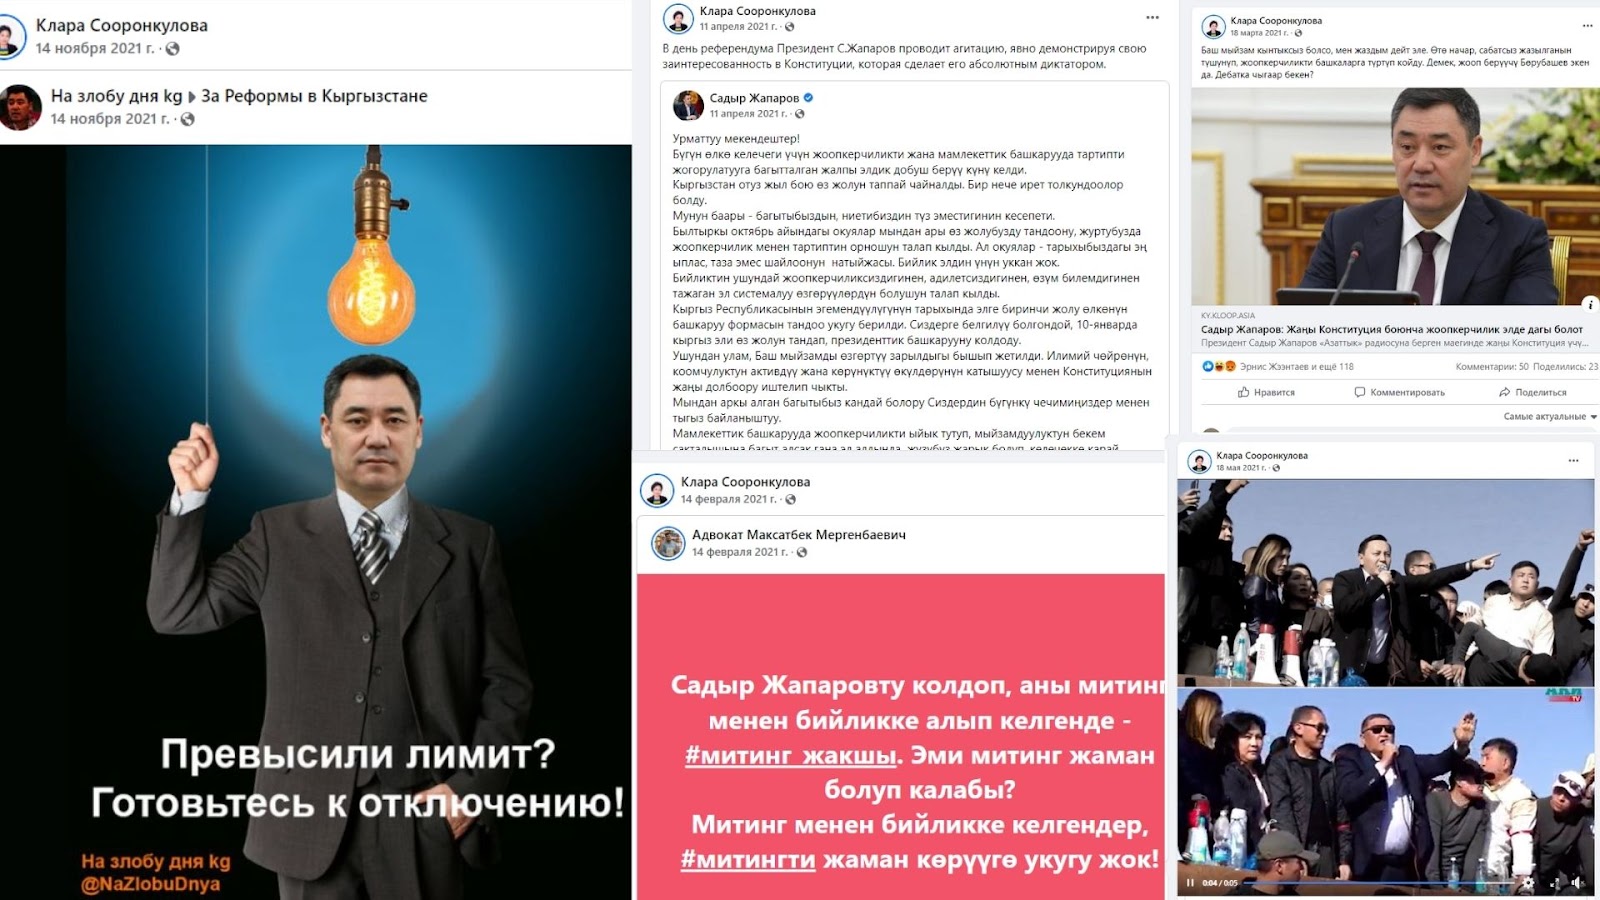 Президент Садыр Жапаров менен болгон маекте журналист  оппозициялык кыймылдын мүчөлөрүнүн сөздөрүн бурмалаган (Фактчекинг)